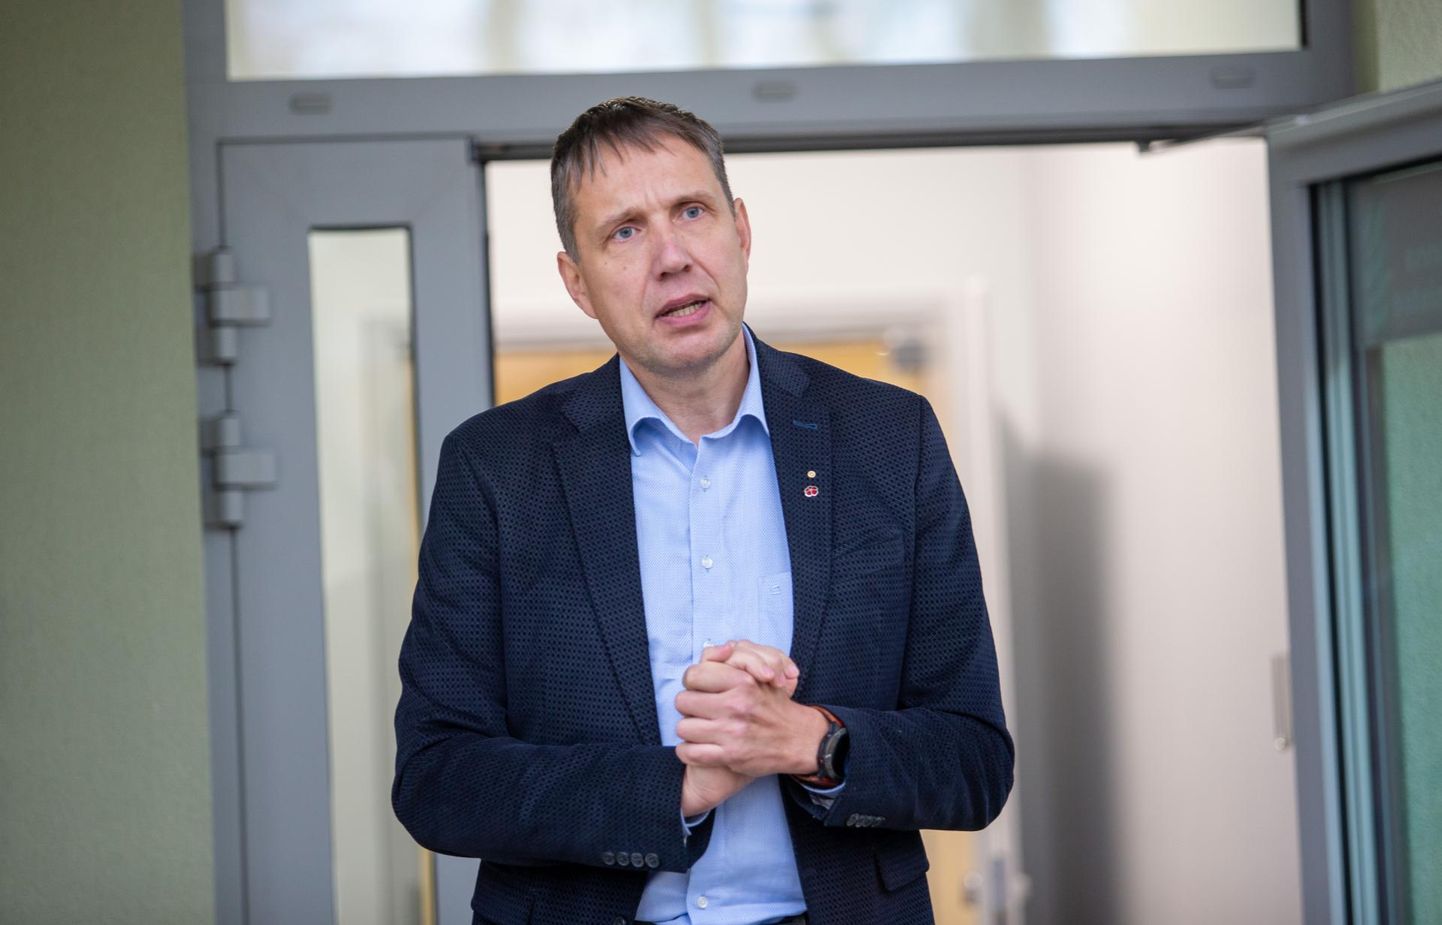 Viljandi haigla juhi Priit Tampere jätkab riigiga läbirääkimisi Tervikumi ehitamisele lisara saamiseks, kuid püüab eelarveauku lappida ka teistest kanalitest.